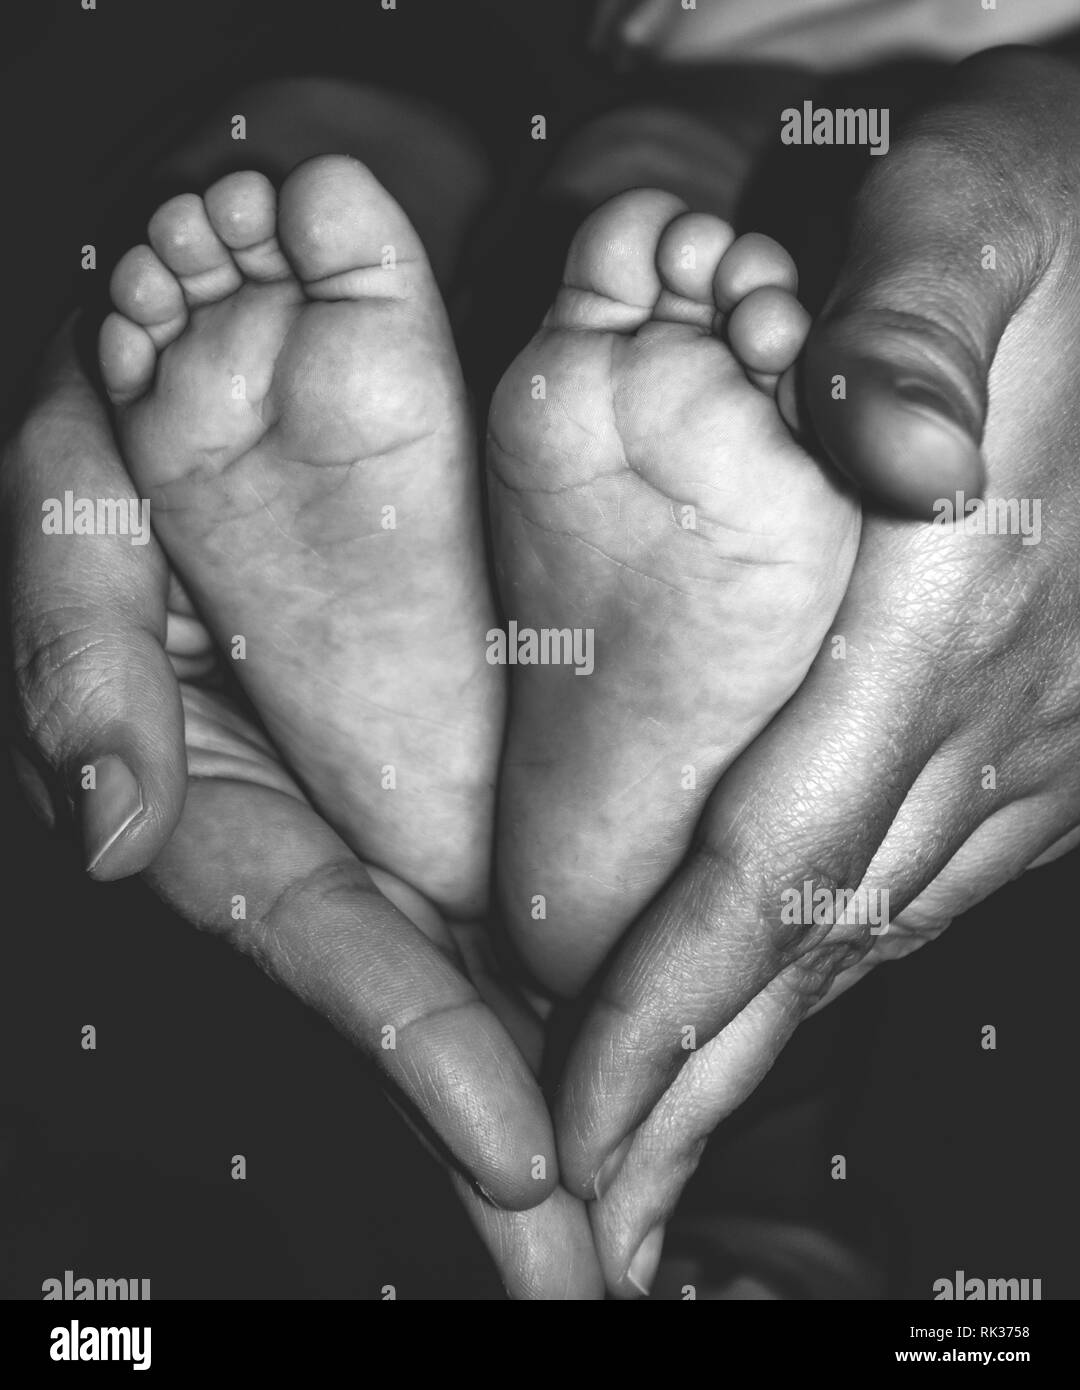 Baby les mains. Petits pieds du nouveau-né sur les mains en forme de coeur libre. Beau noir et blanc de l'image conceptuelle de la maternité. Banque D'Images